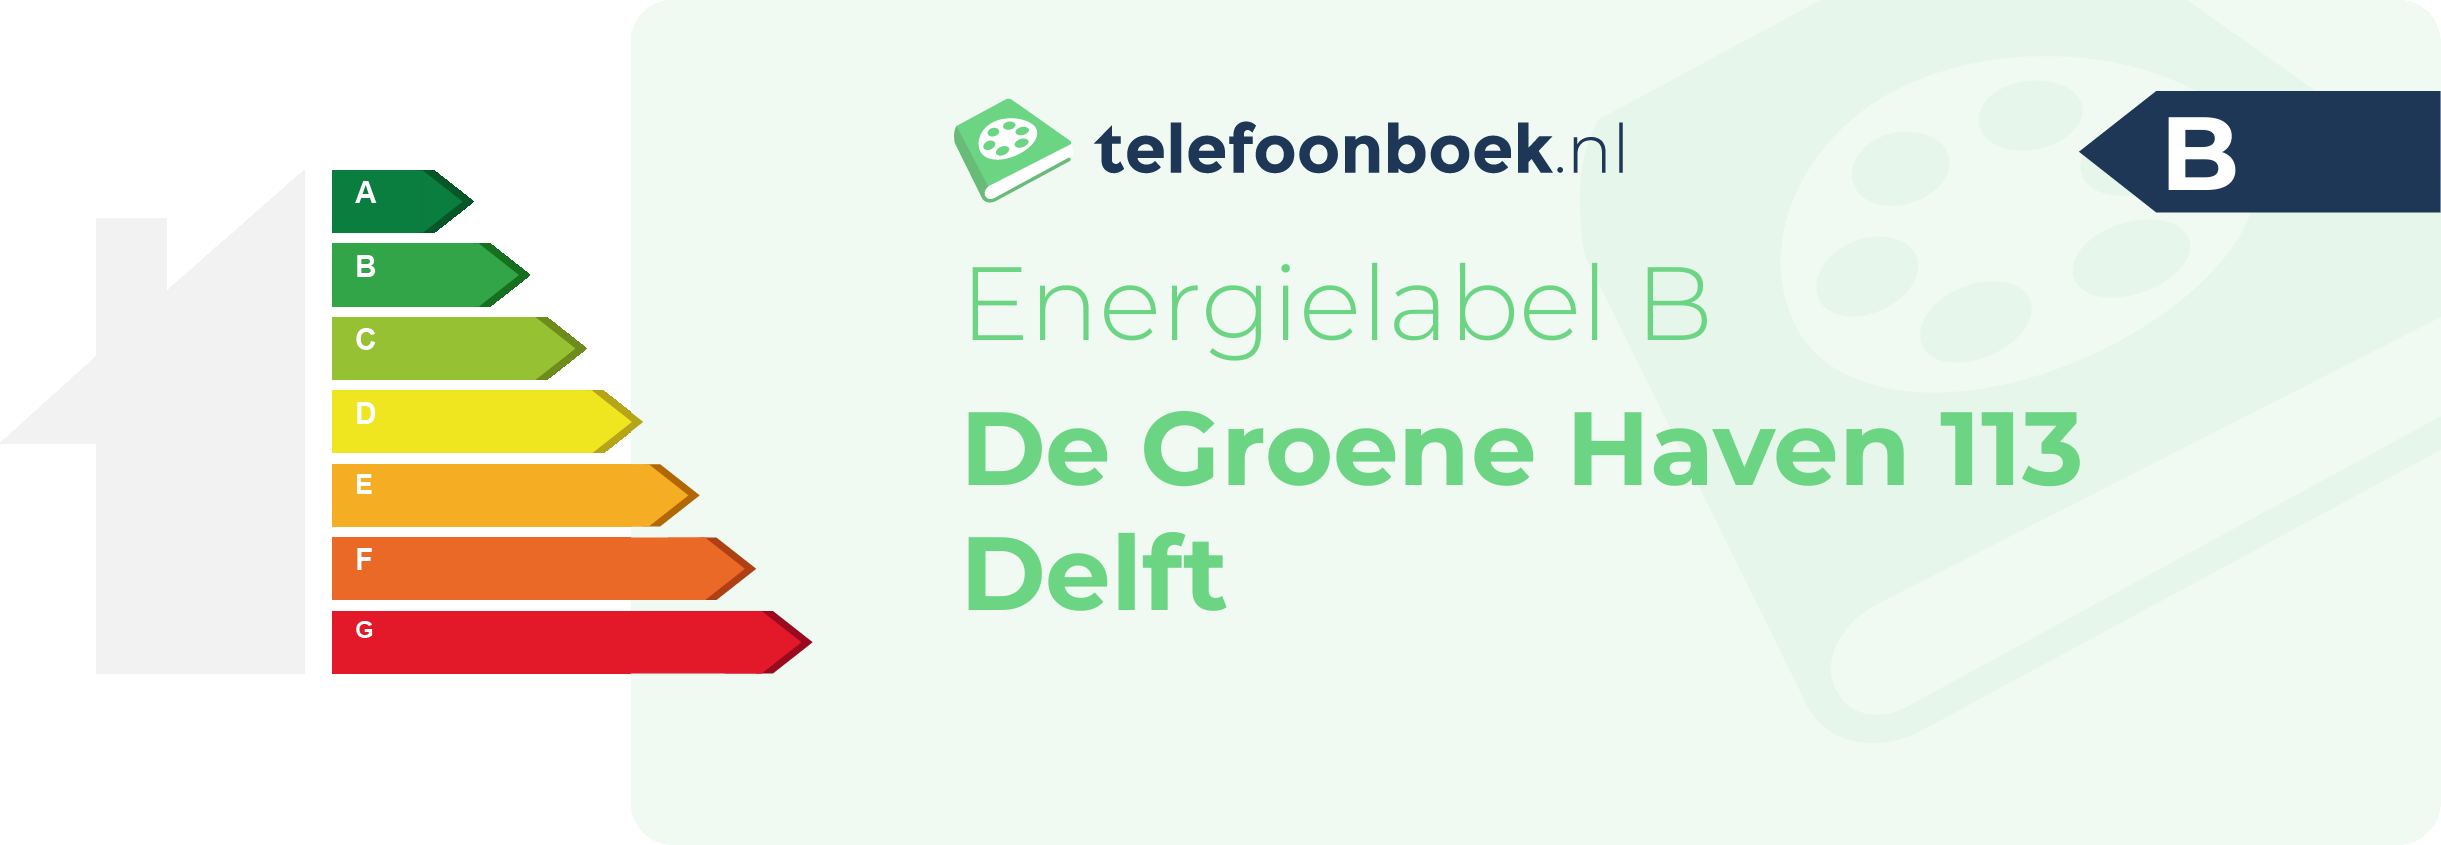 Energielabel De Groene Haven 113 Delft